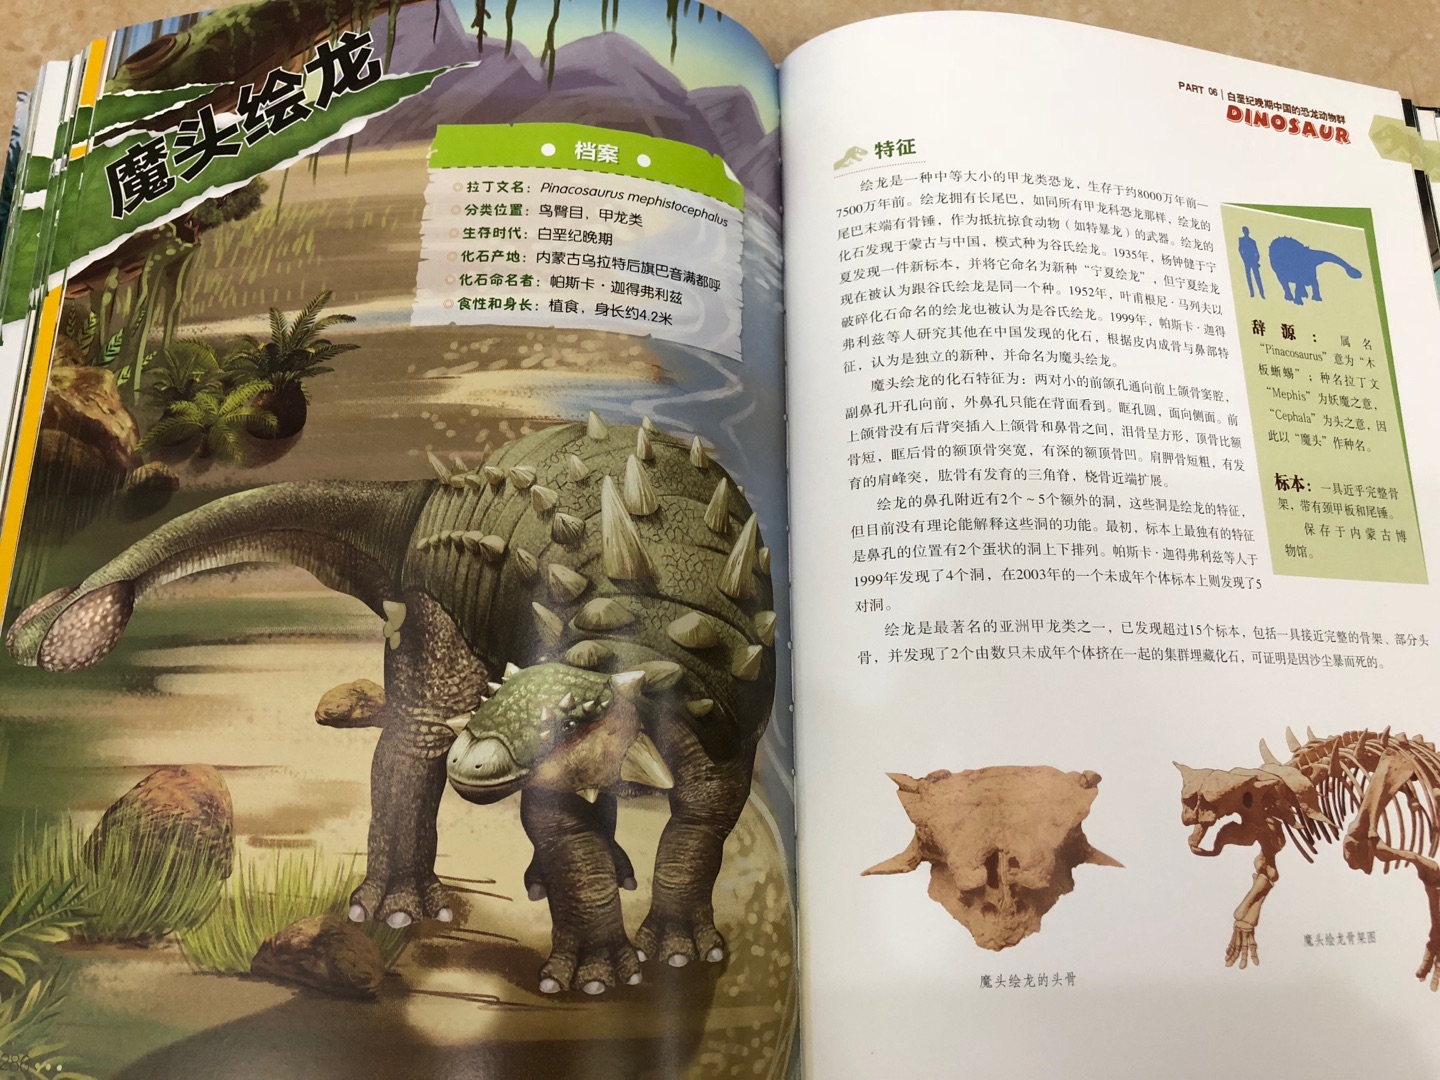 中国恐龙百科全书，浙江教育出版社出版，是精装版并且超级厚的一本书，一共339页，纸质非常好，里面介绍的恐龙?非常全非常全，从三叠纪到侏罗纪到白垩纪，各个时期的恐龙都做了详细的介绍，孩子看到这本书太兴奋了，他最喜欢恐龙了，真的是爱不释手。书中每一页讲述一个恐龙的知识，每一页都有插图，而且里面的图案非常精美，各个恐龙都画的很形象，色彩搭配也很舒服，学恐龙知识这本书真的必不可少！特别是男孩子